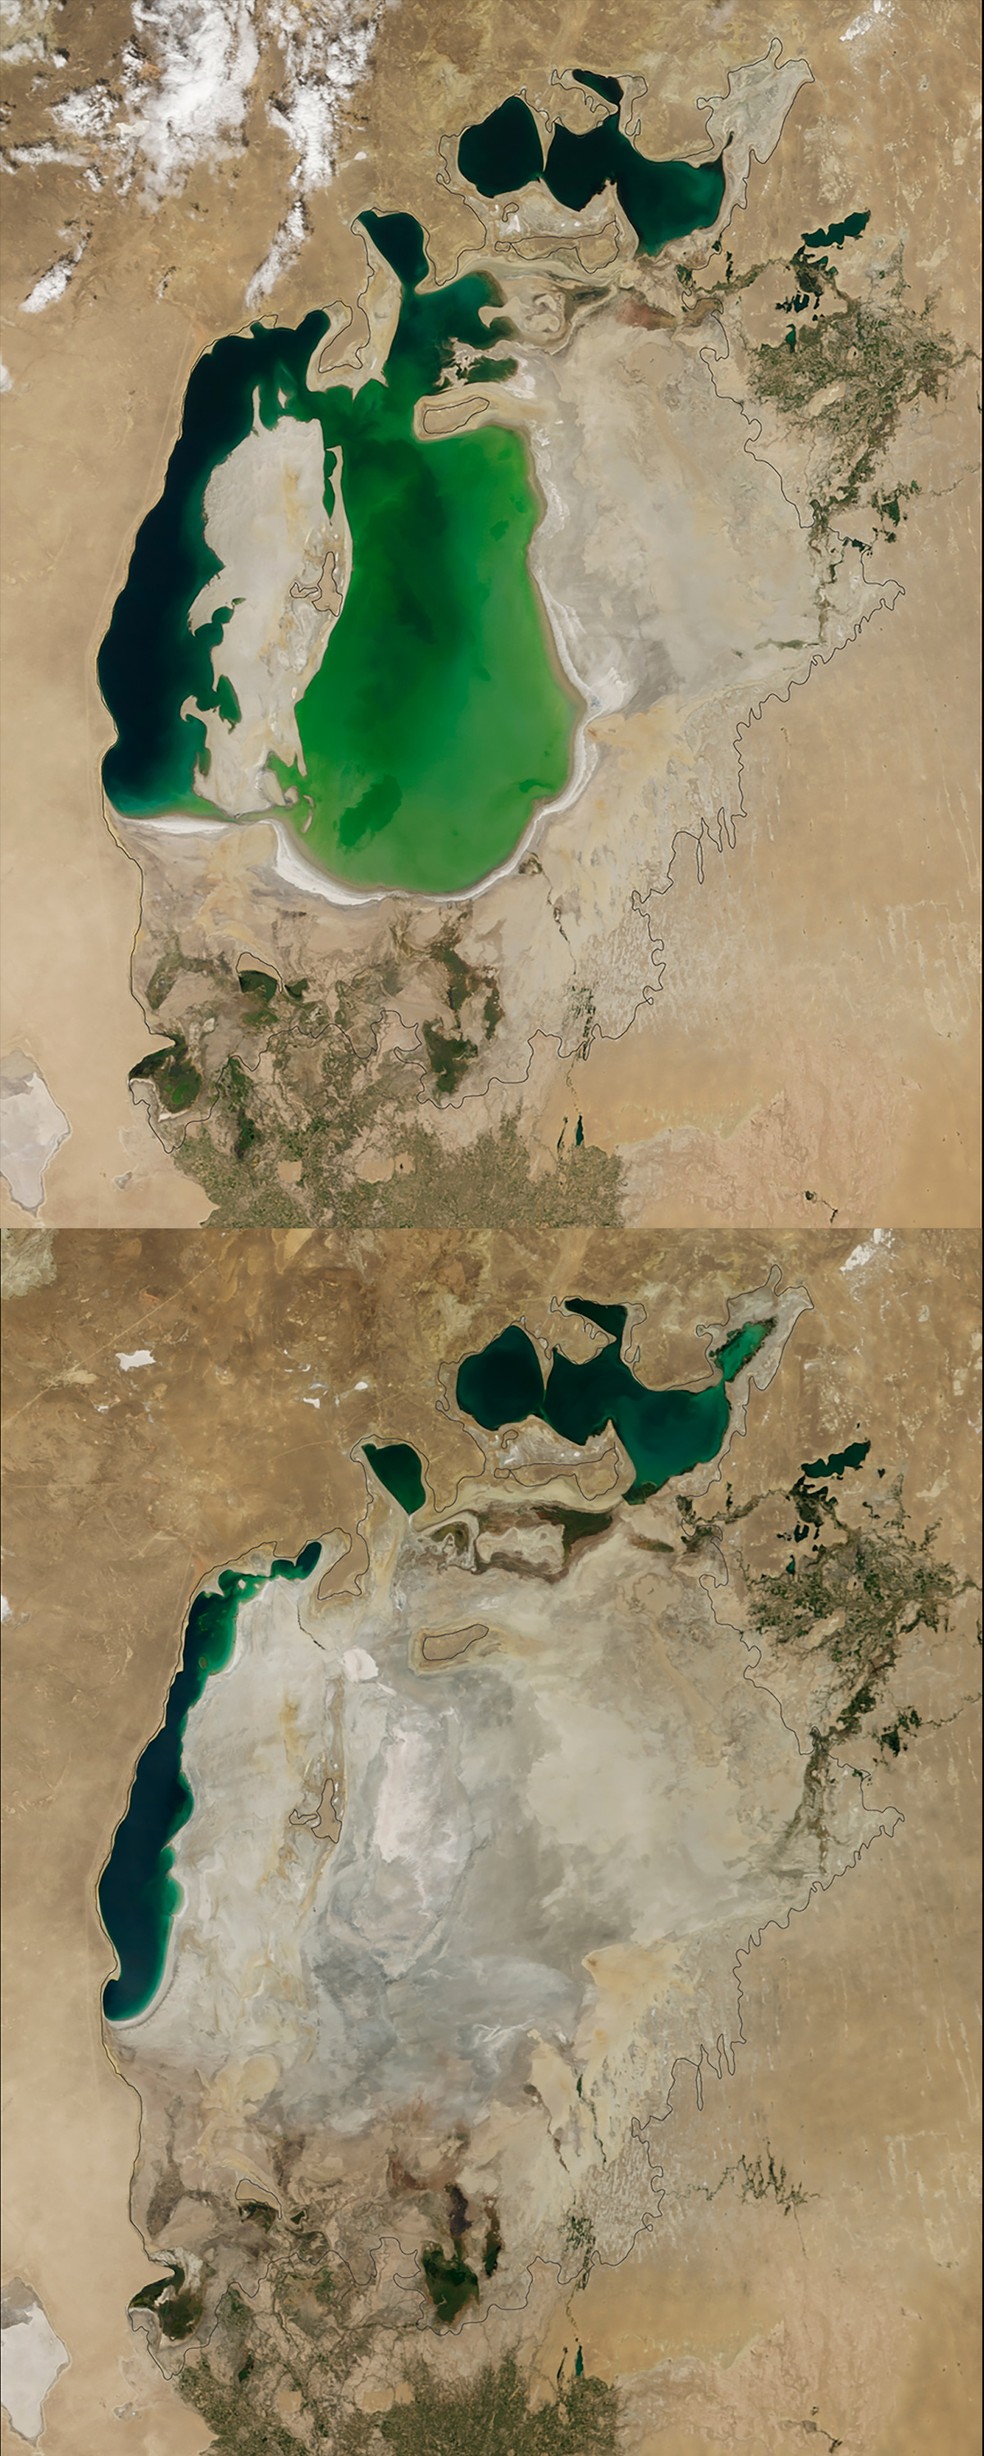 Encolhimento do Mar de Aral, na Ásia Central — Foto: NASA